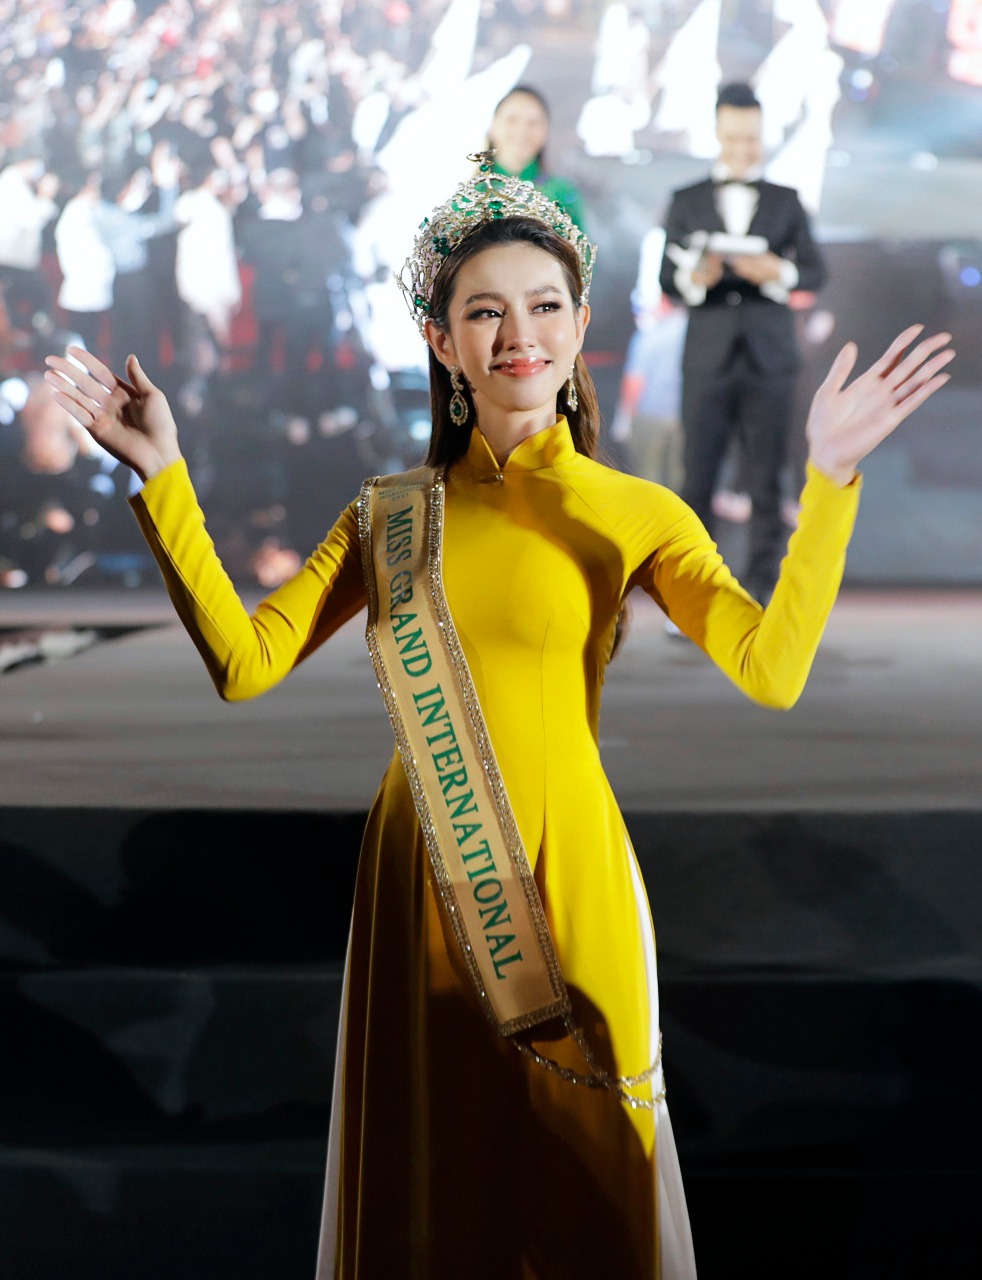 Không cần 'hở bạo' Hoa hậu Thùy Tiên vẫn cuốn hút nhờ thần thái 'sang chảnh' ngút ngàn, bộ trang phục được CĐM khen 'nức nở' - Ảnh 7